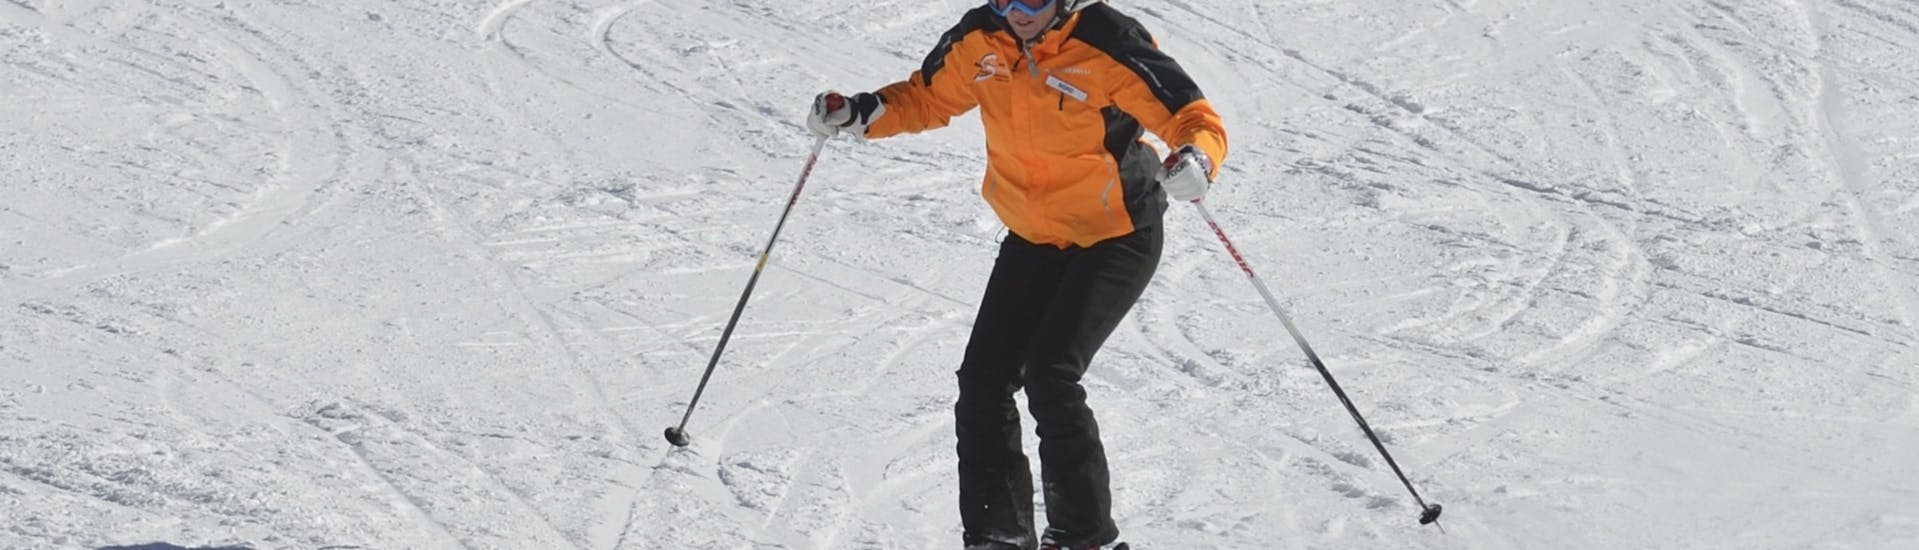 Ein Skianfänger während dem Privaten Skikurs für Erwachsene Anfänger.